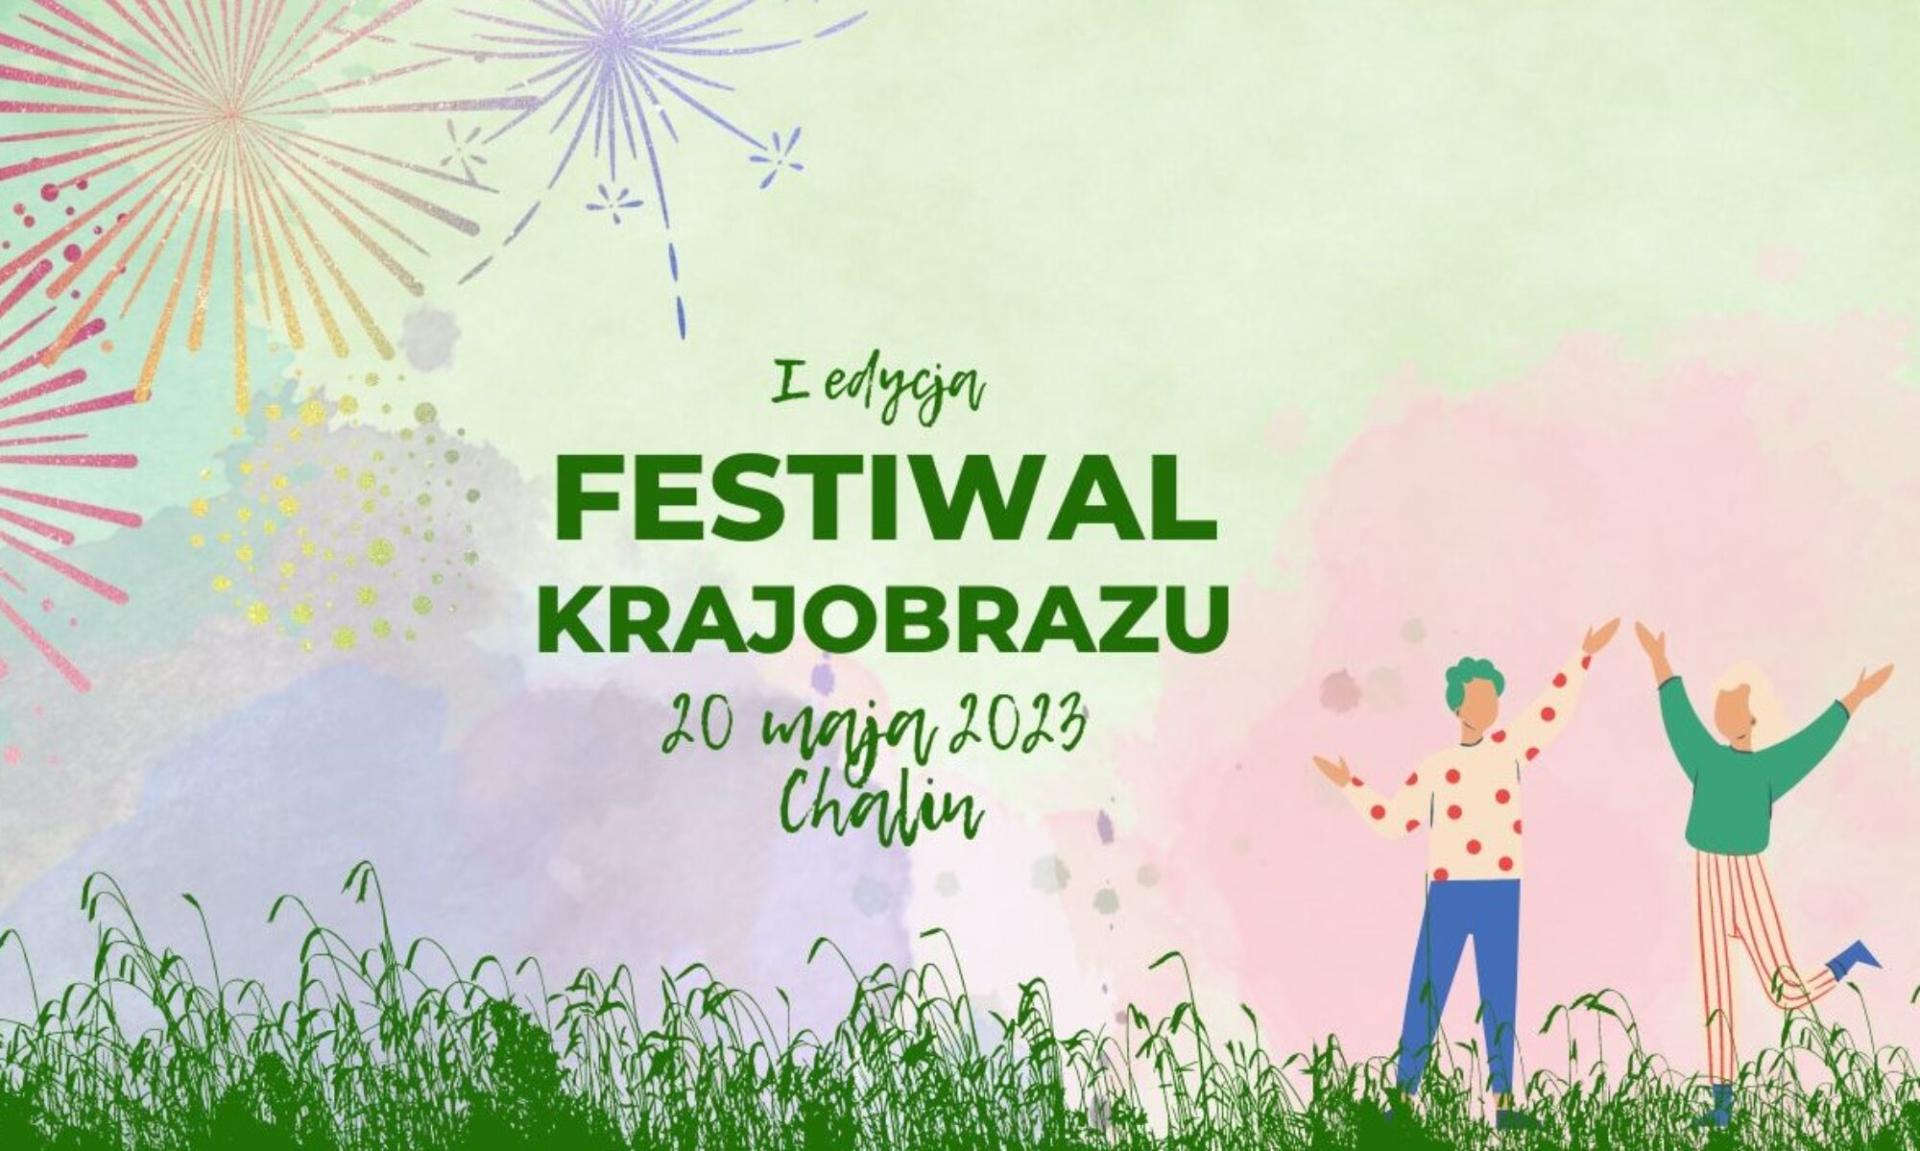 Festiwal Krajobrazu wraz z kampusem ekologicznym – dzień pełen ekologicznych atrakcji - zobacz więcej